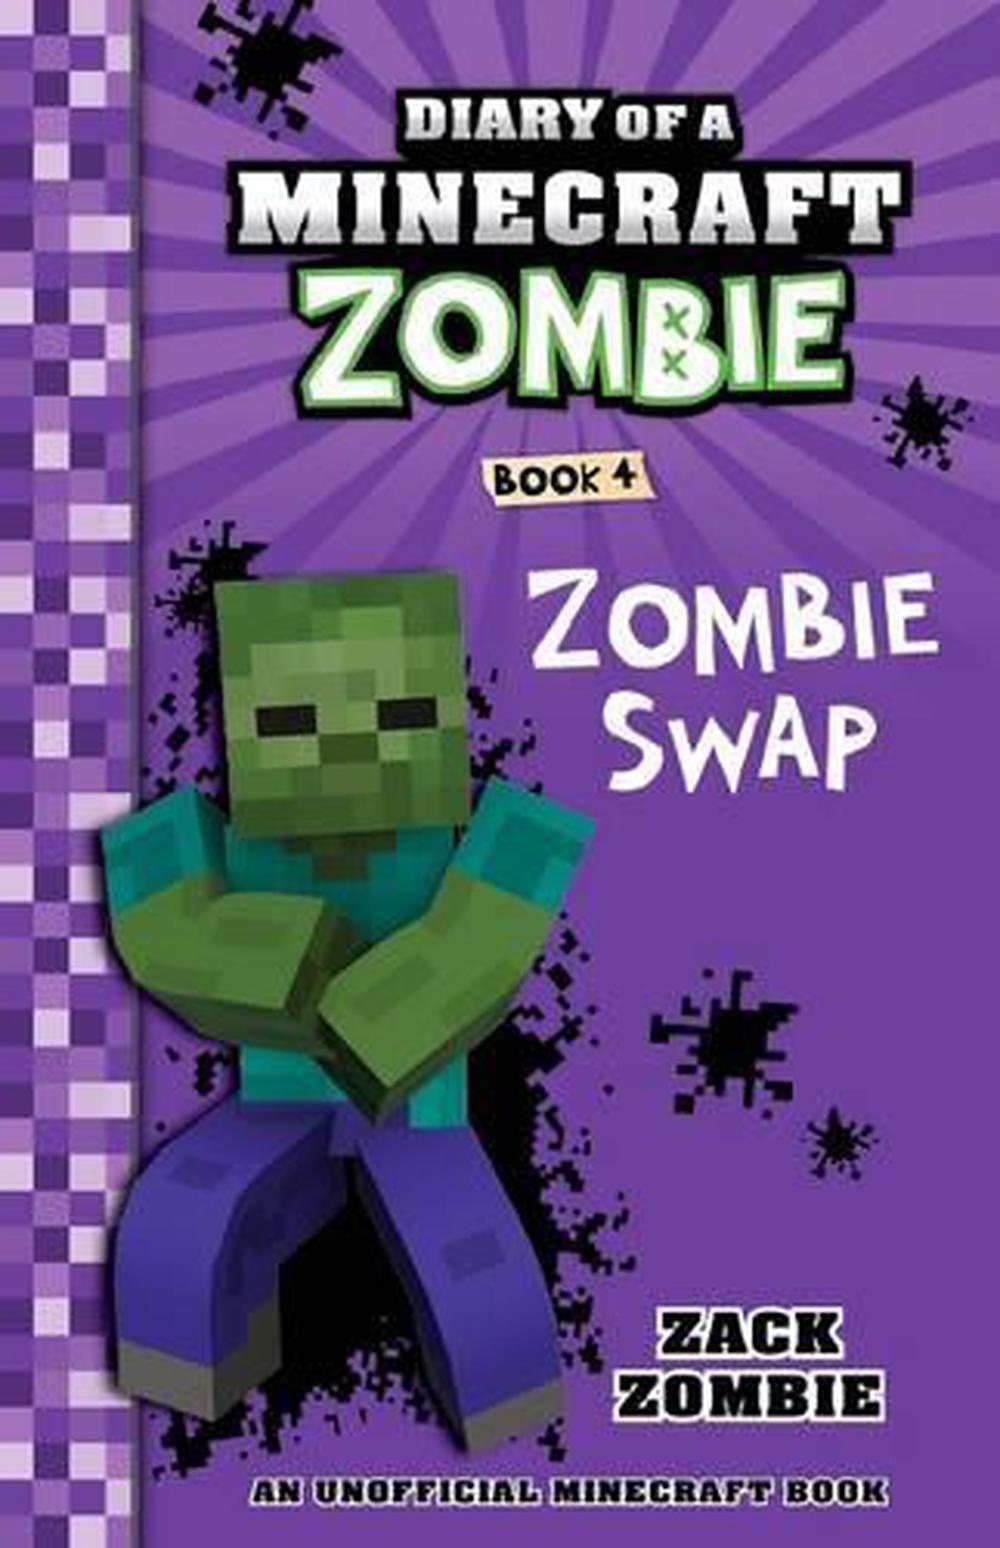 Diary of a Minecraft Zombie 4 Zombie Swap by Zack Zombie, Paperback